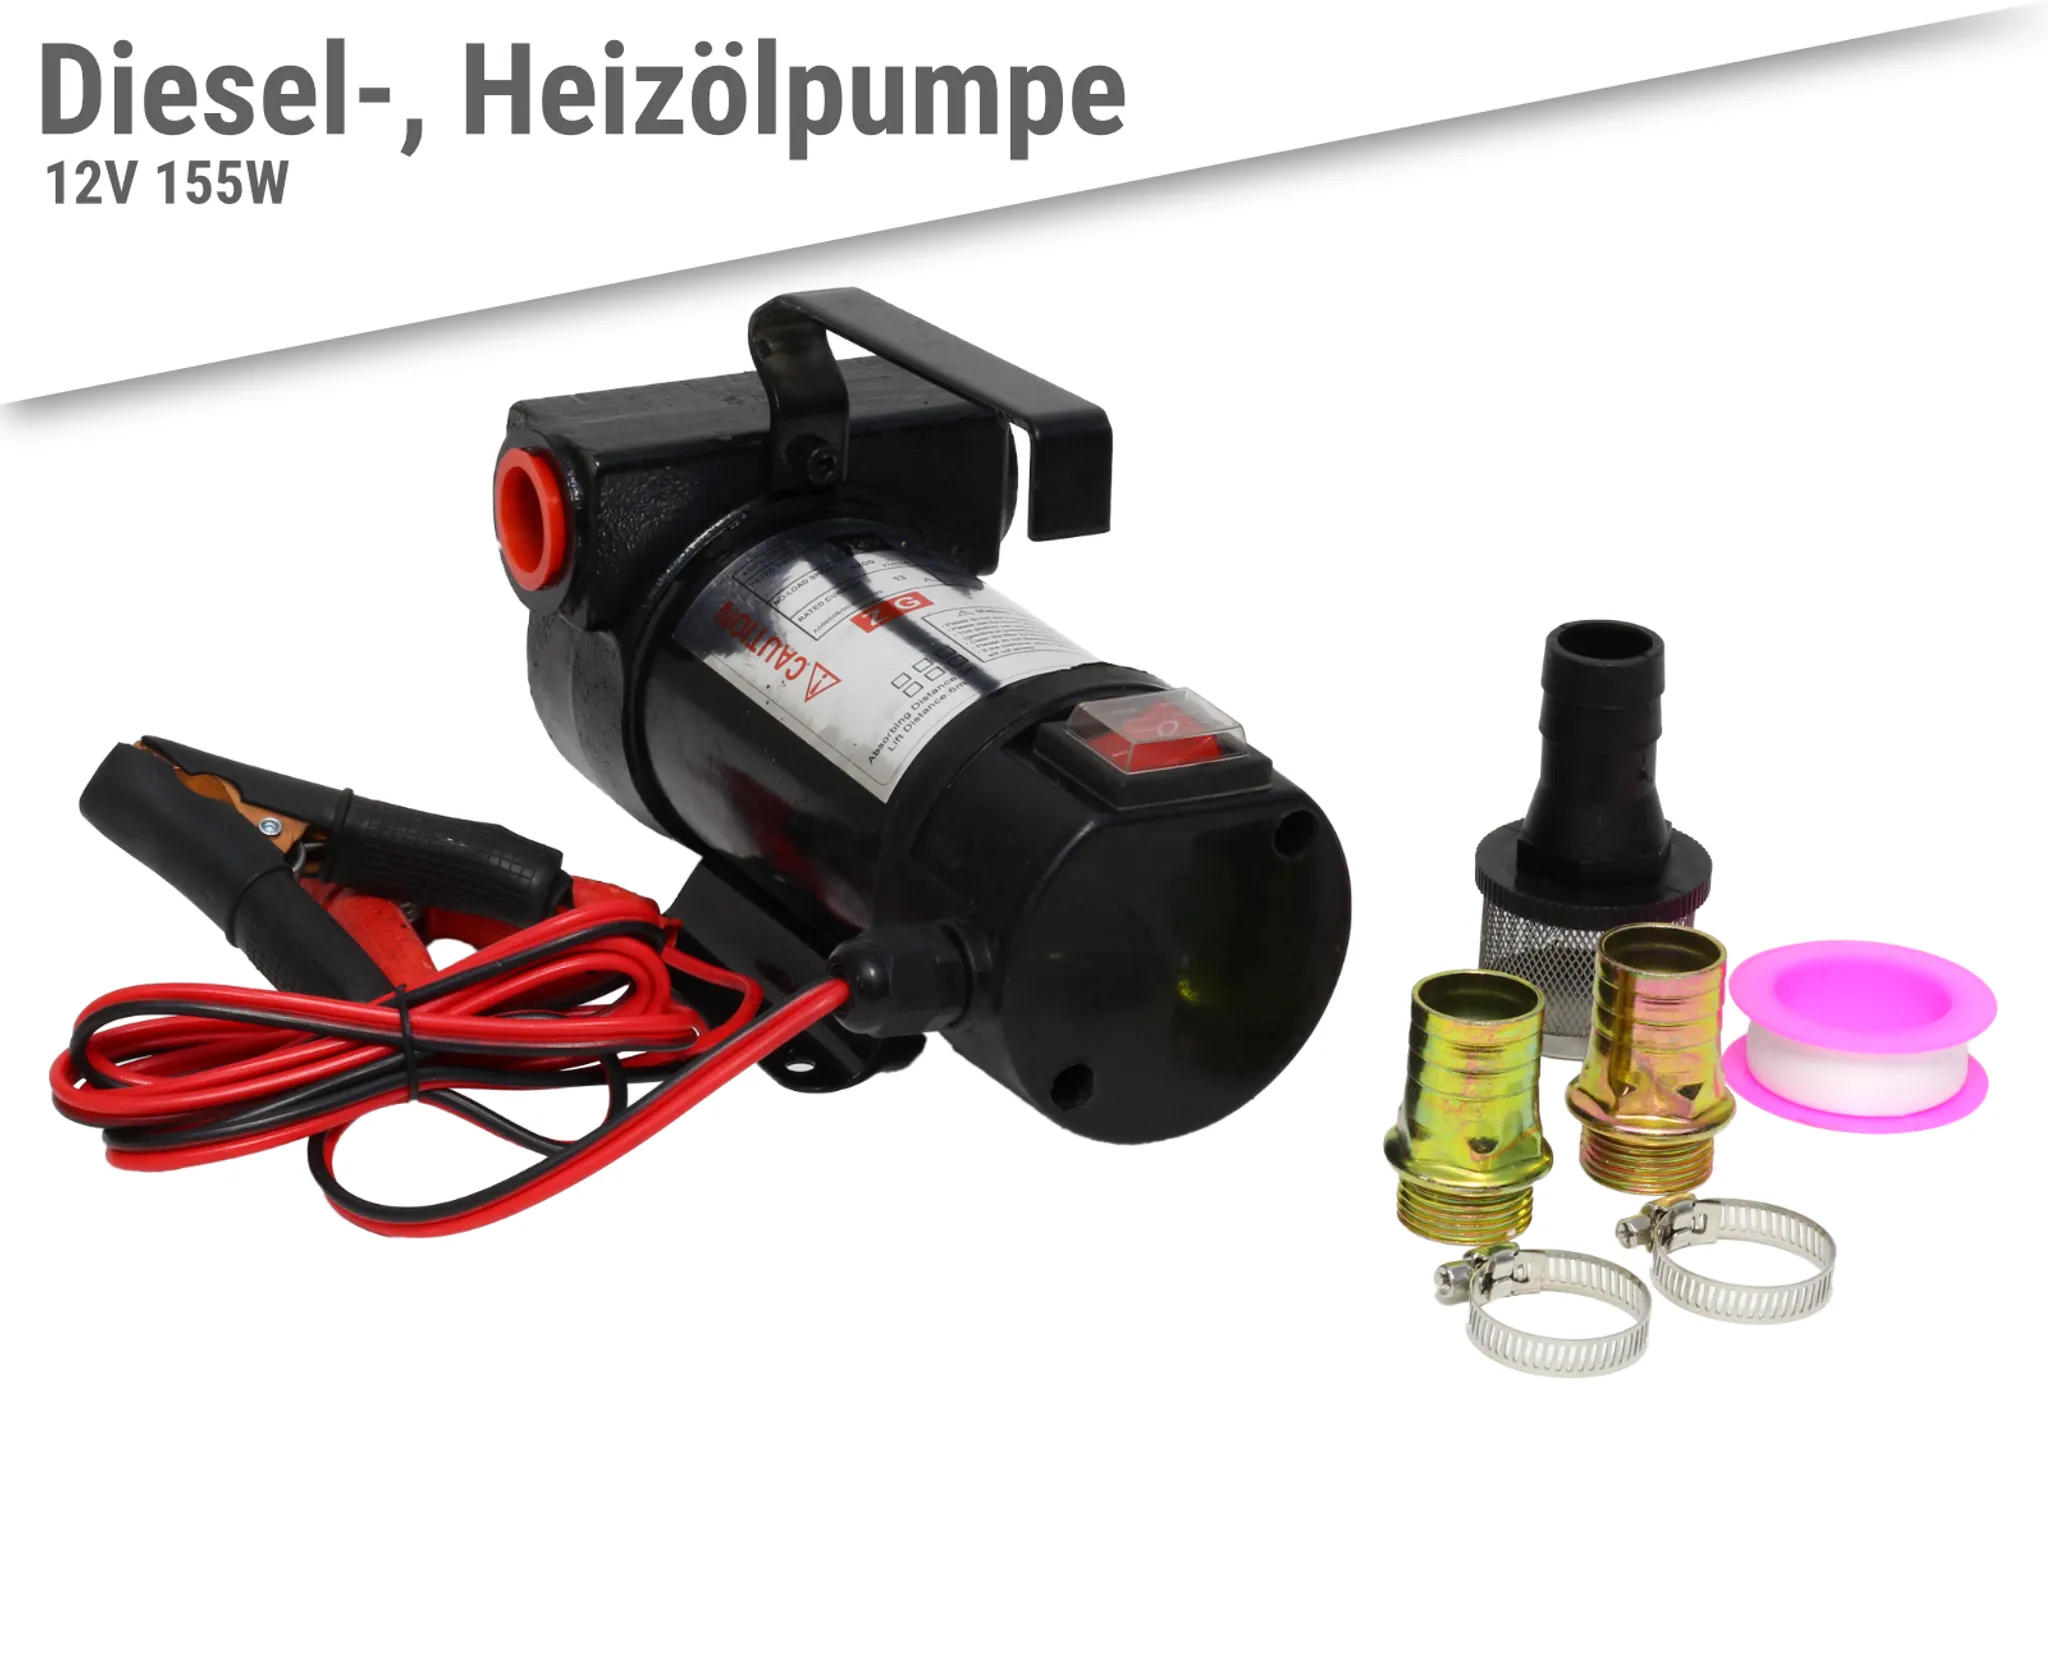 HeizÖl- und Diesel Pumpe mit Handpistole und Schläuchen 12V